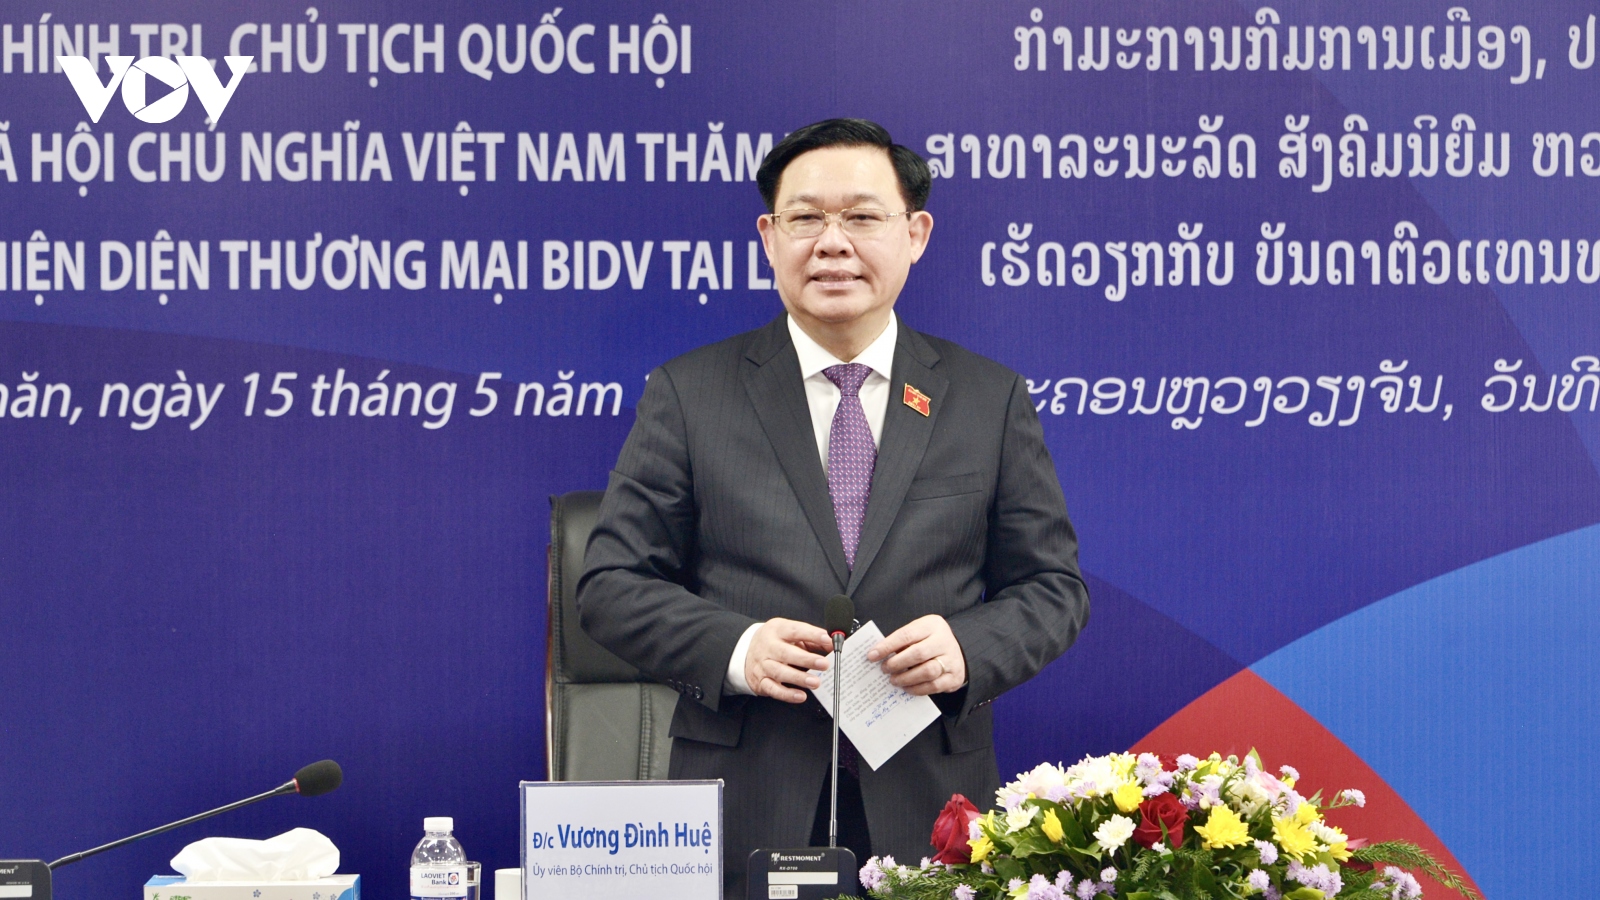 Chủ tịch Quốc hội thăm và làm việc với các hiện diện thương mại BIDV tại Lào